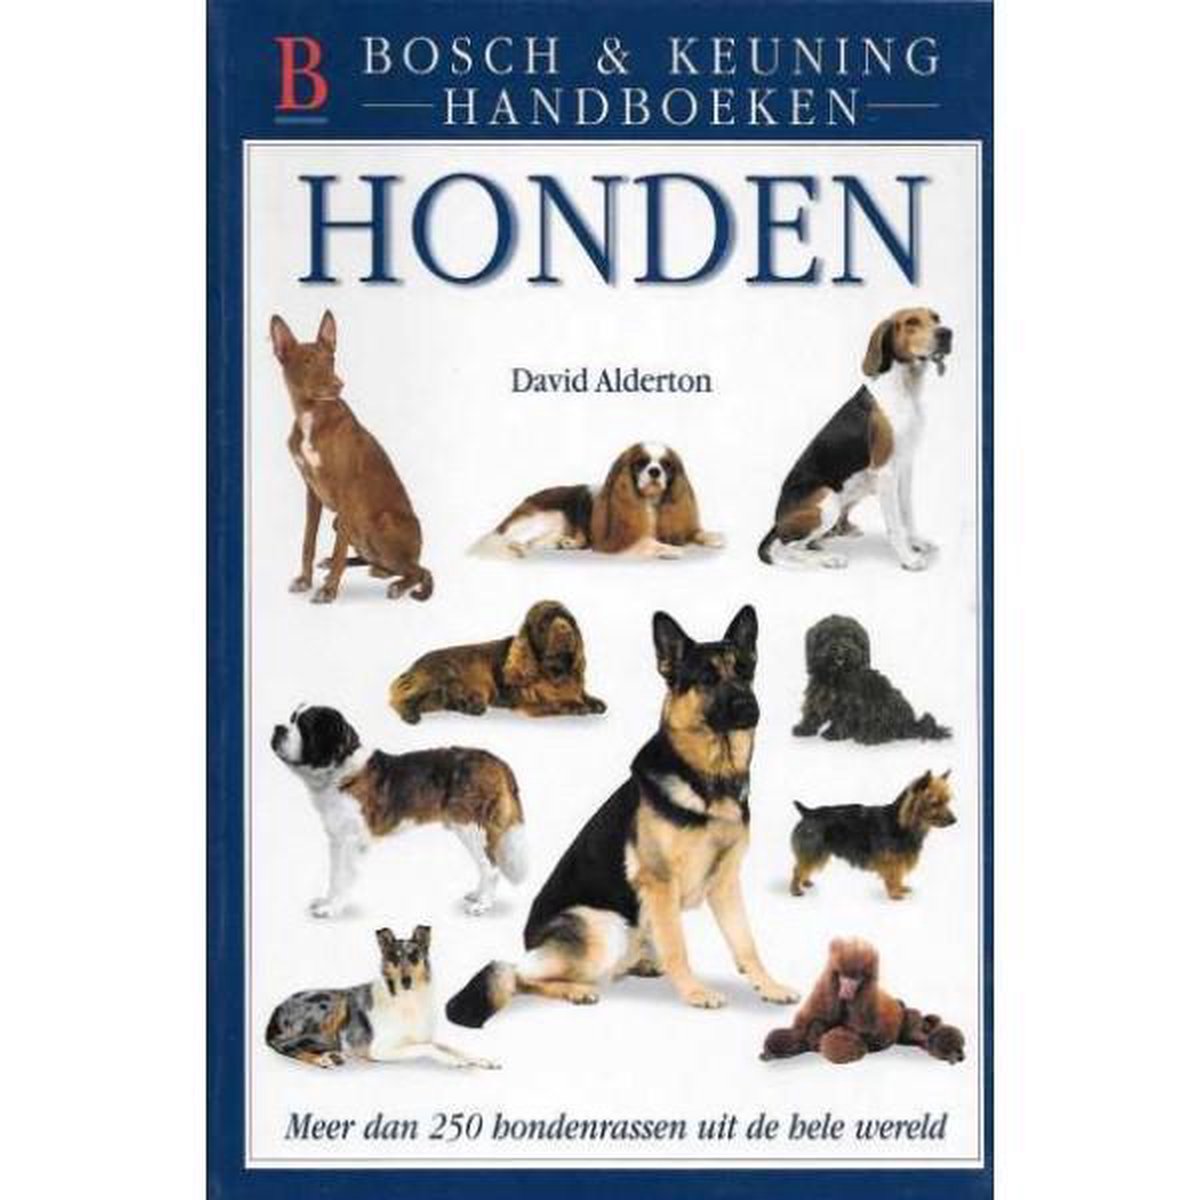 Honden / Bosch & Keuning Handboeken